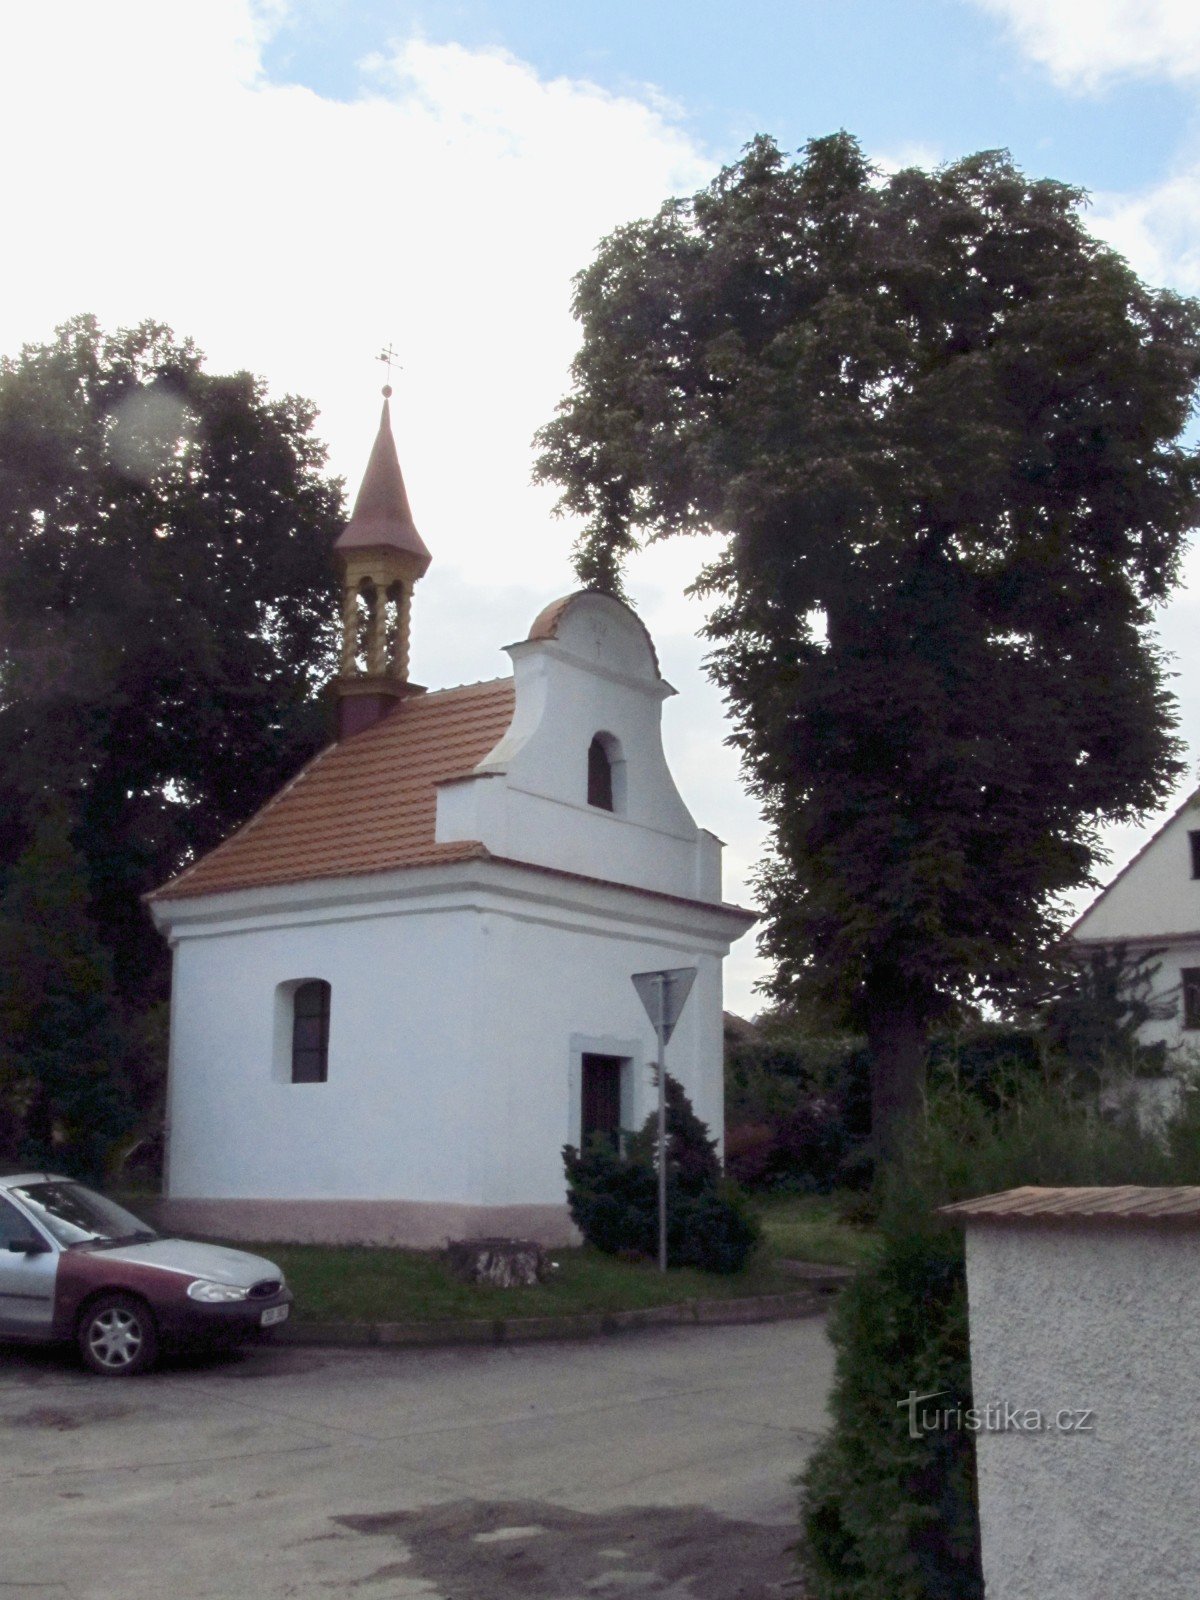 02 Stračí - chapelle